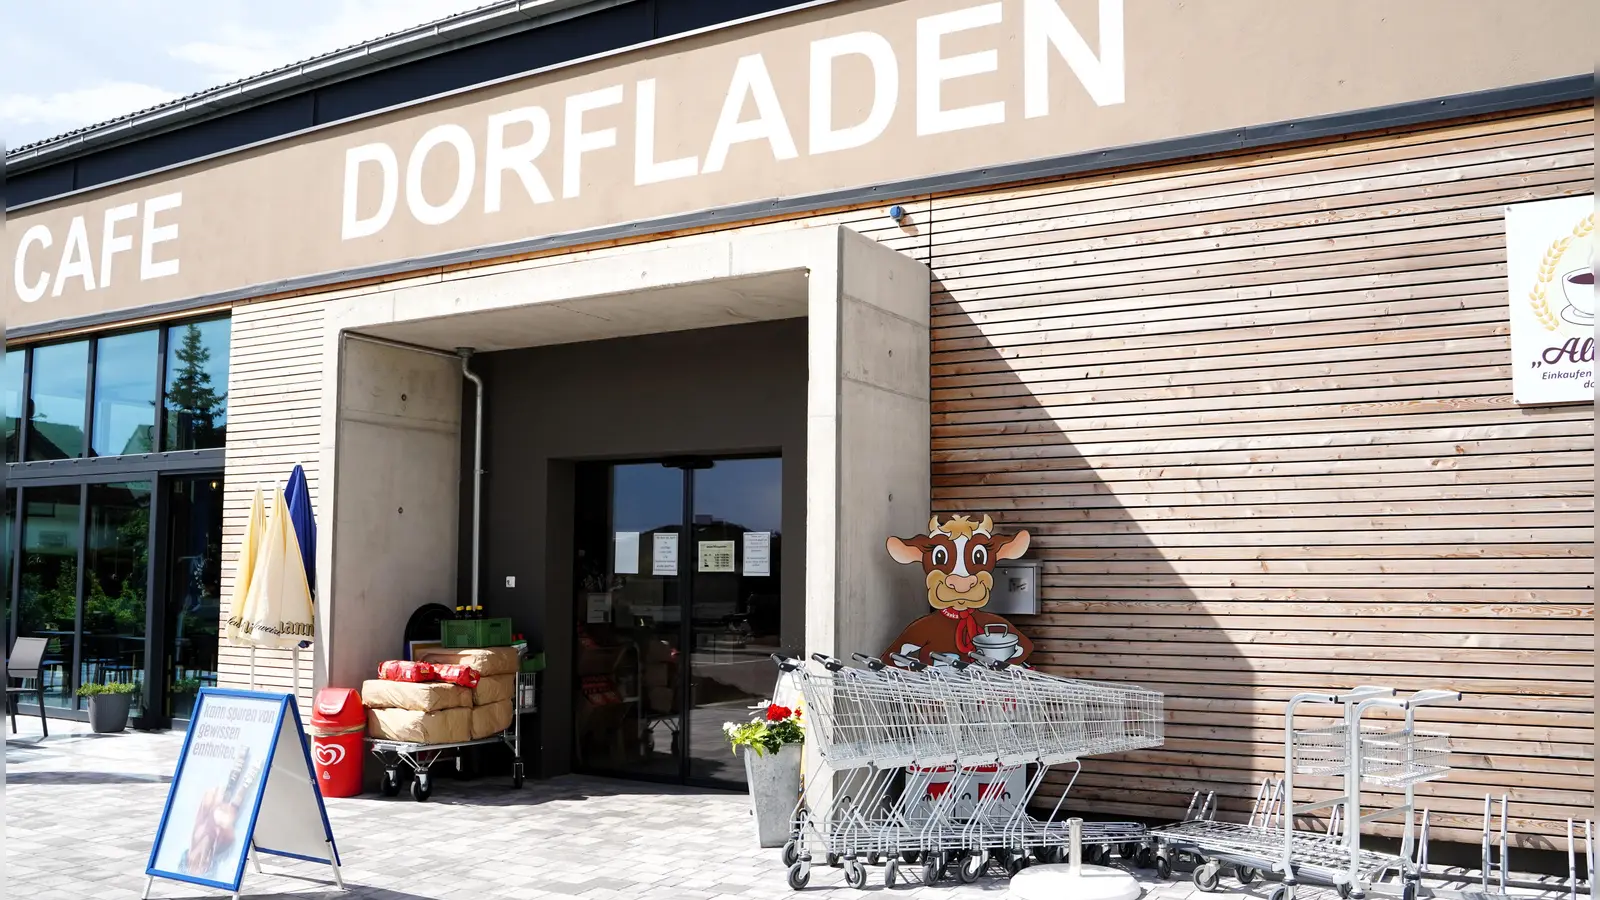 Nicht nur für den Lebensmitteleinkauf wird der Dorfladen genutzt. Mit seinem Café und der Außenterrasse hat er sich auch zu einem beliebten Treffpunkt im Ort entwickelt. (Foto: Simone Hedler)